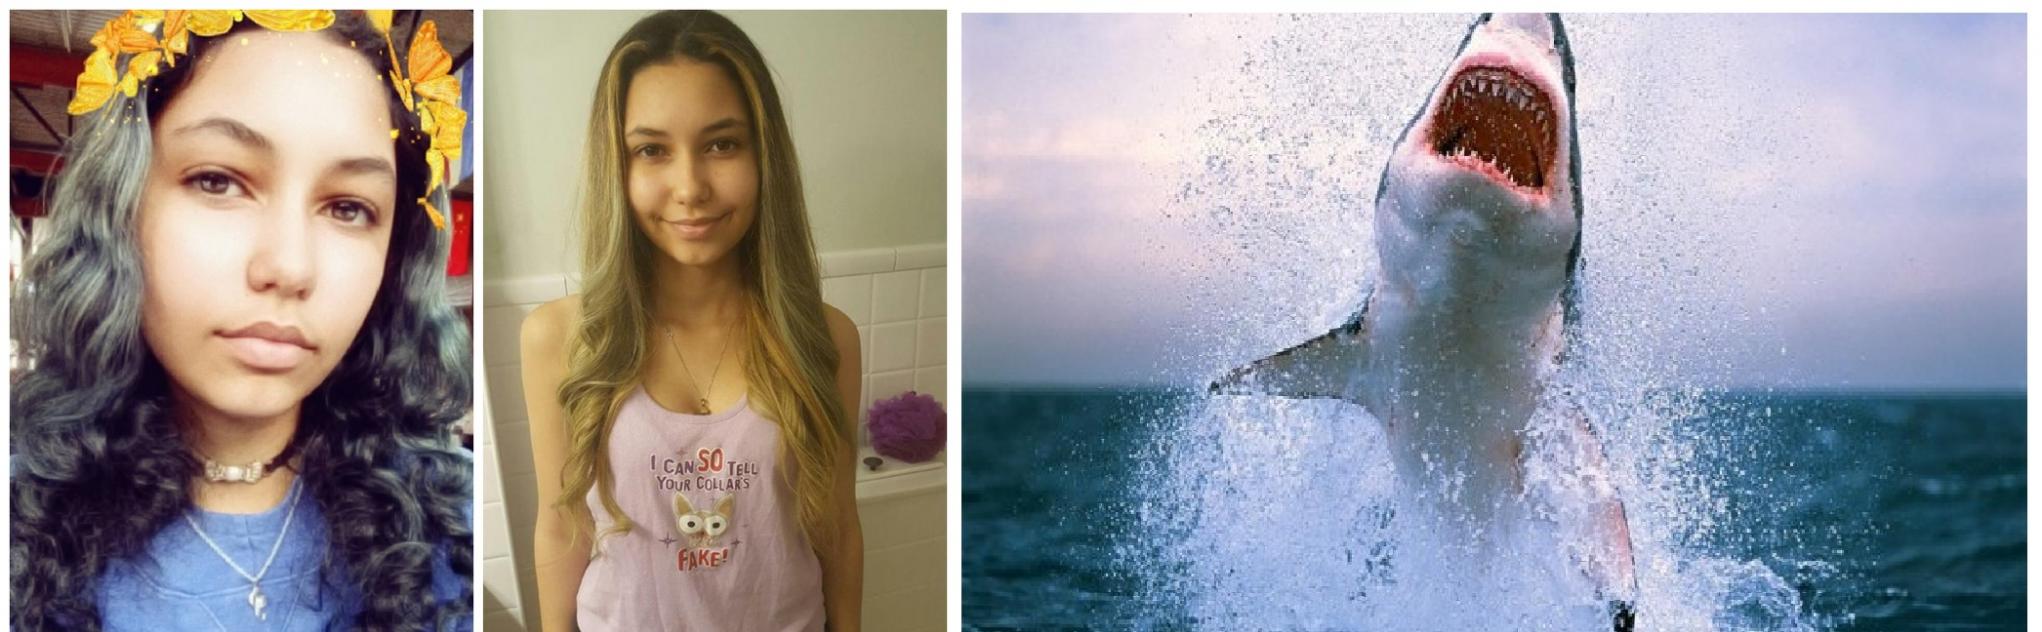 美国19岁少女Paige Winter遭鲨鱼袭击截肢保命 故事搬上国家地理频道